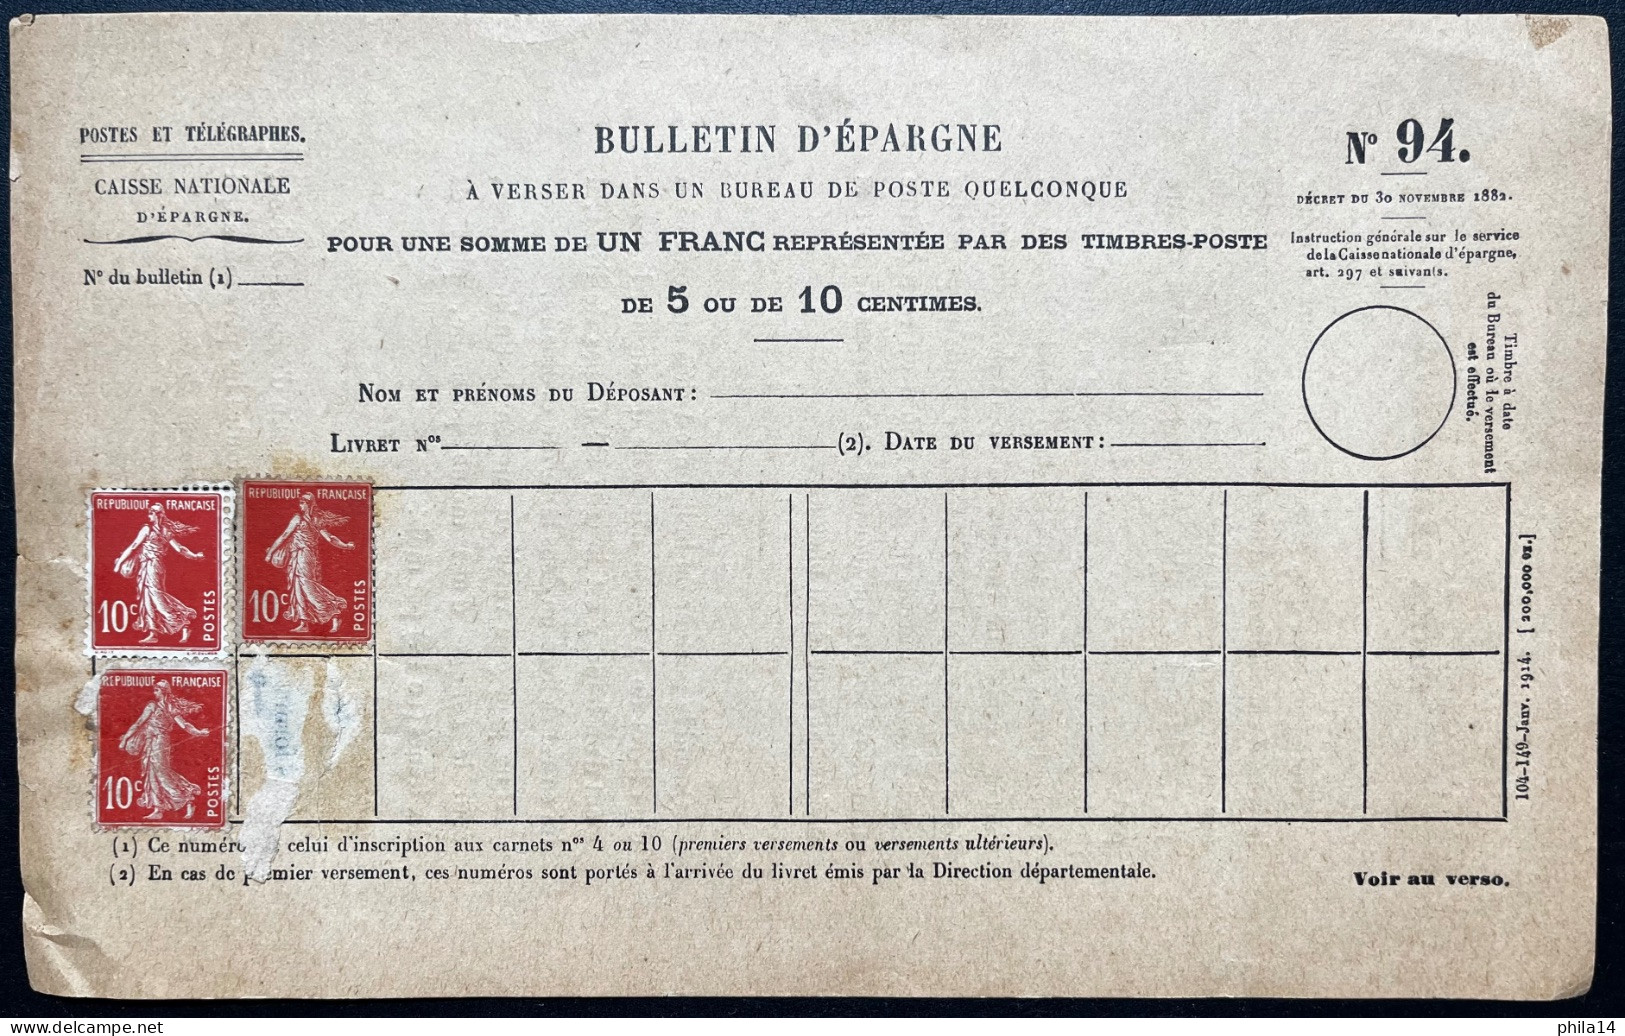 3X 10c SEMEUSE NEUFS SUR BULLETIN D'EPAGNE POSTES ET TELEGRAPHES N°94 - Documents Of Postal Services